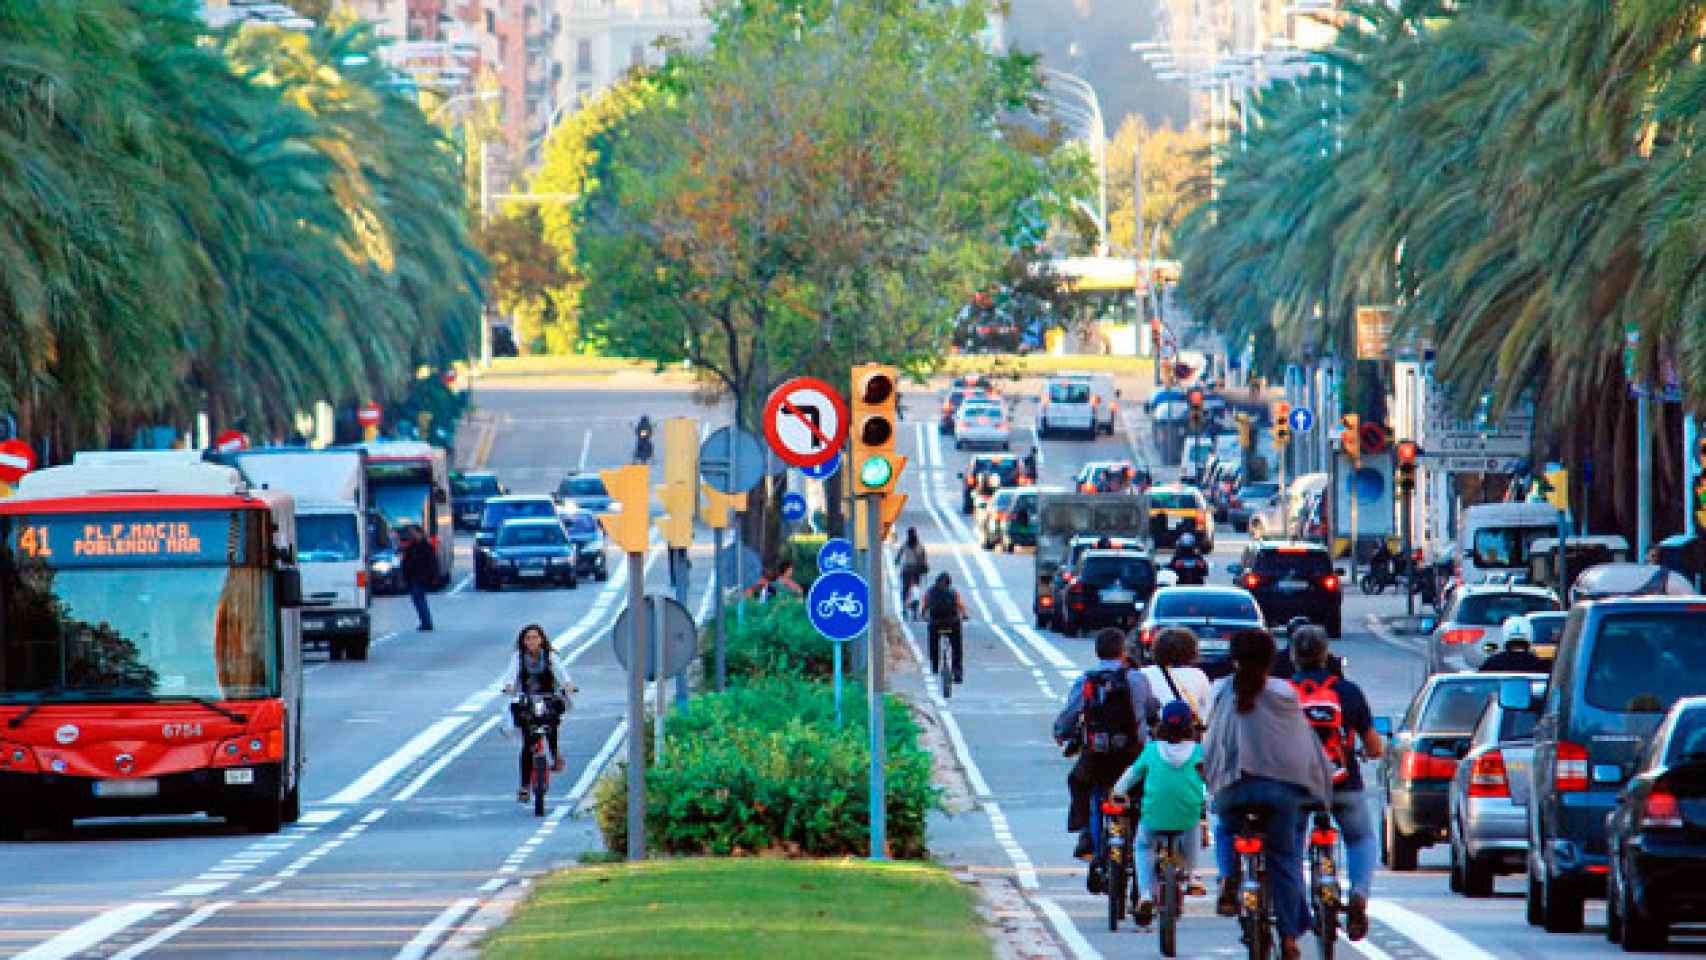 Carriles bici en la calle Marina en Barcelona / CG ciudades